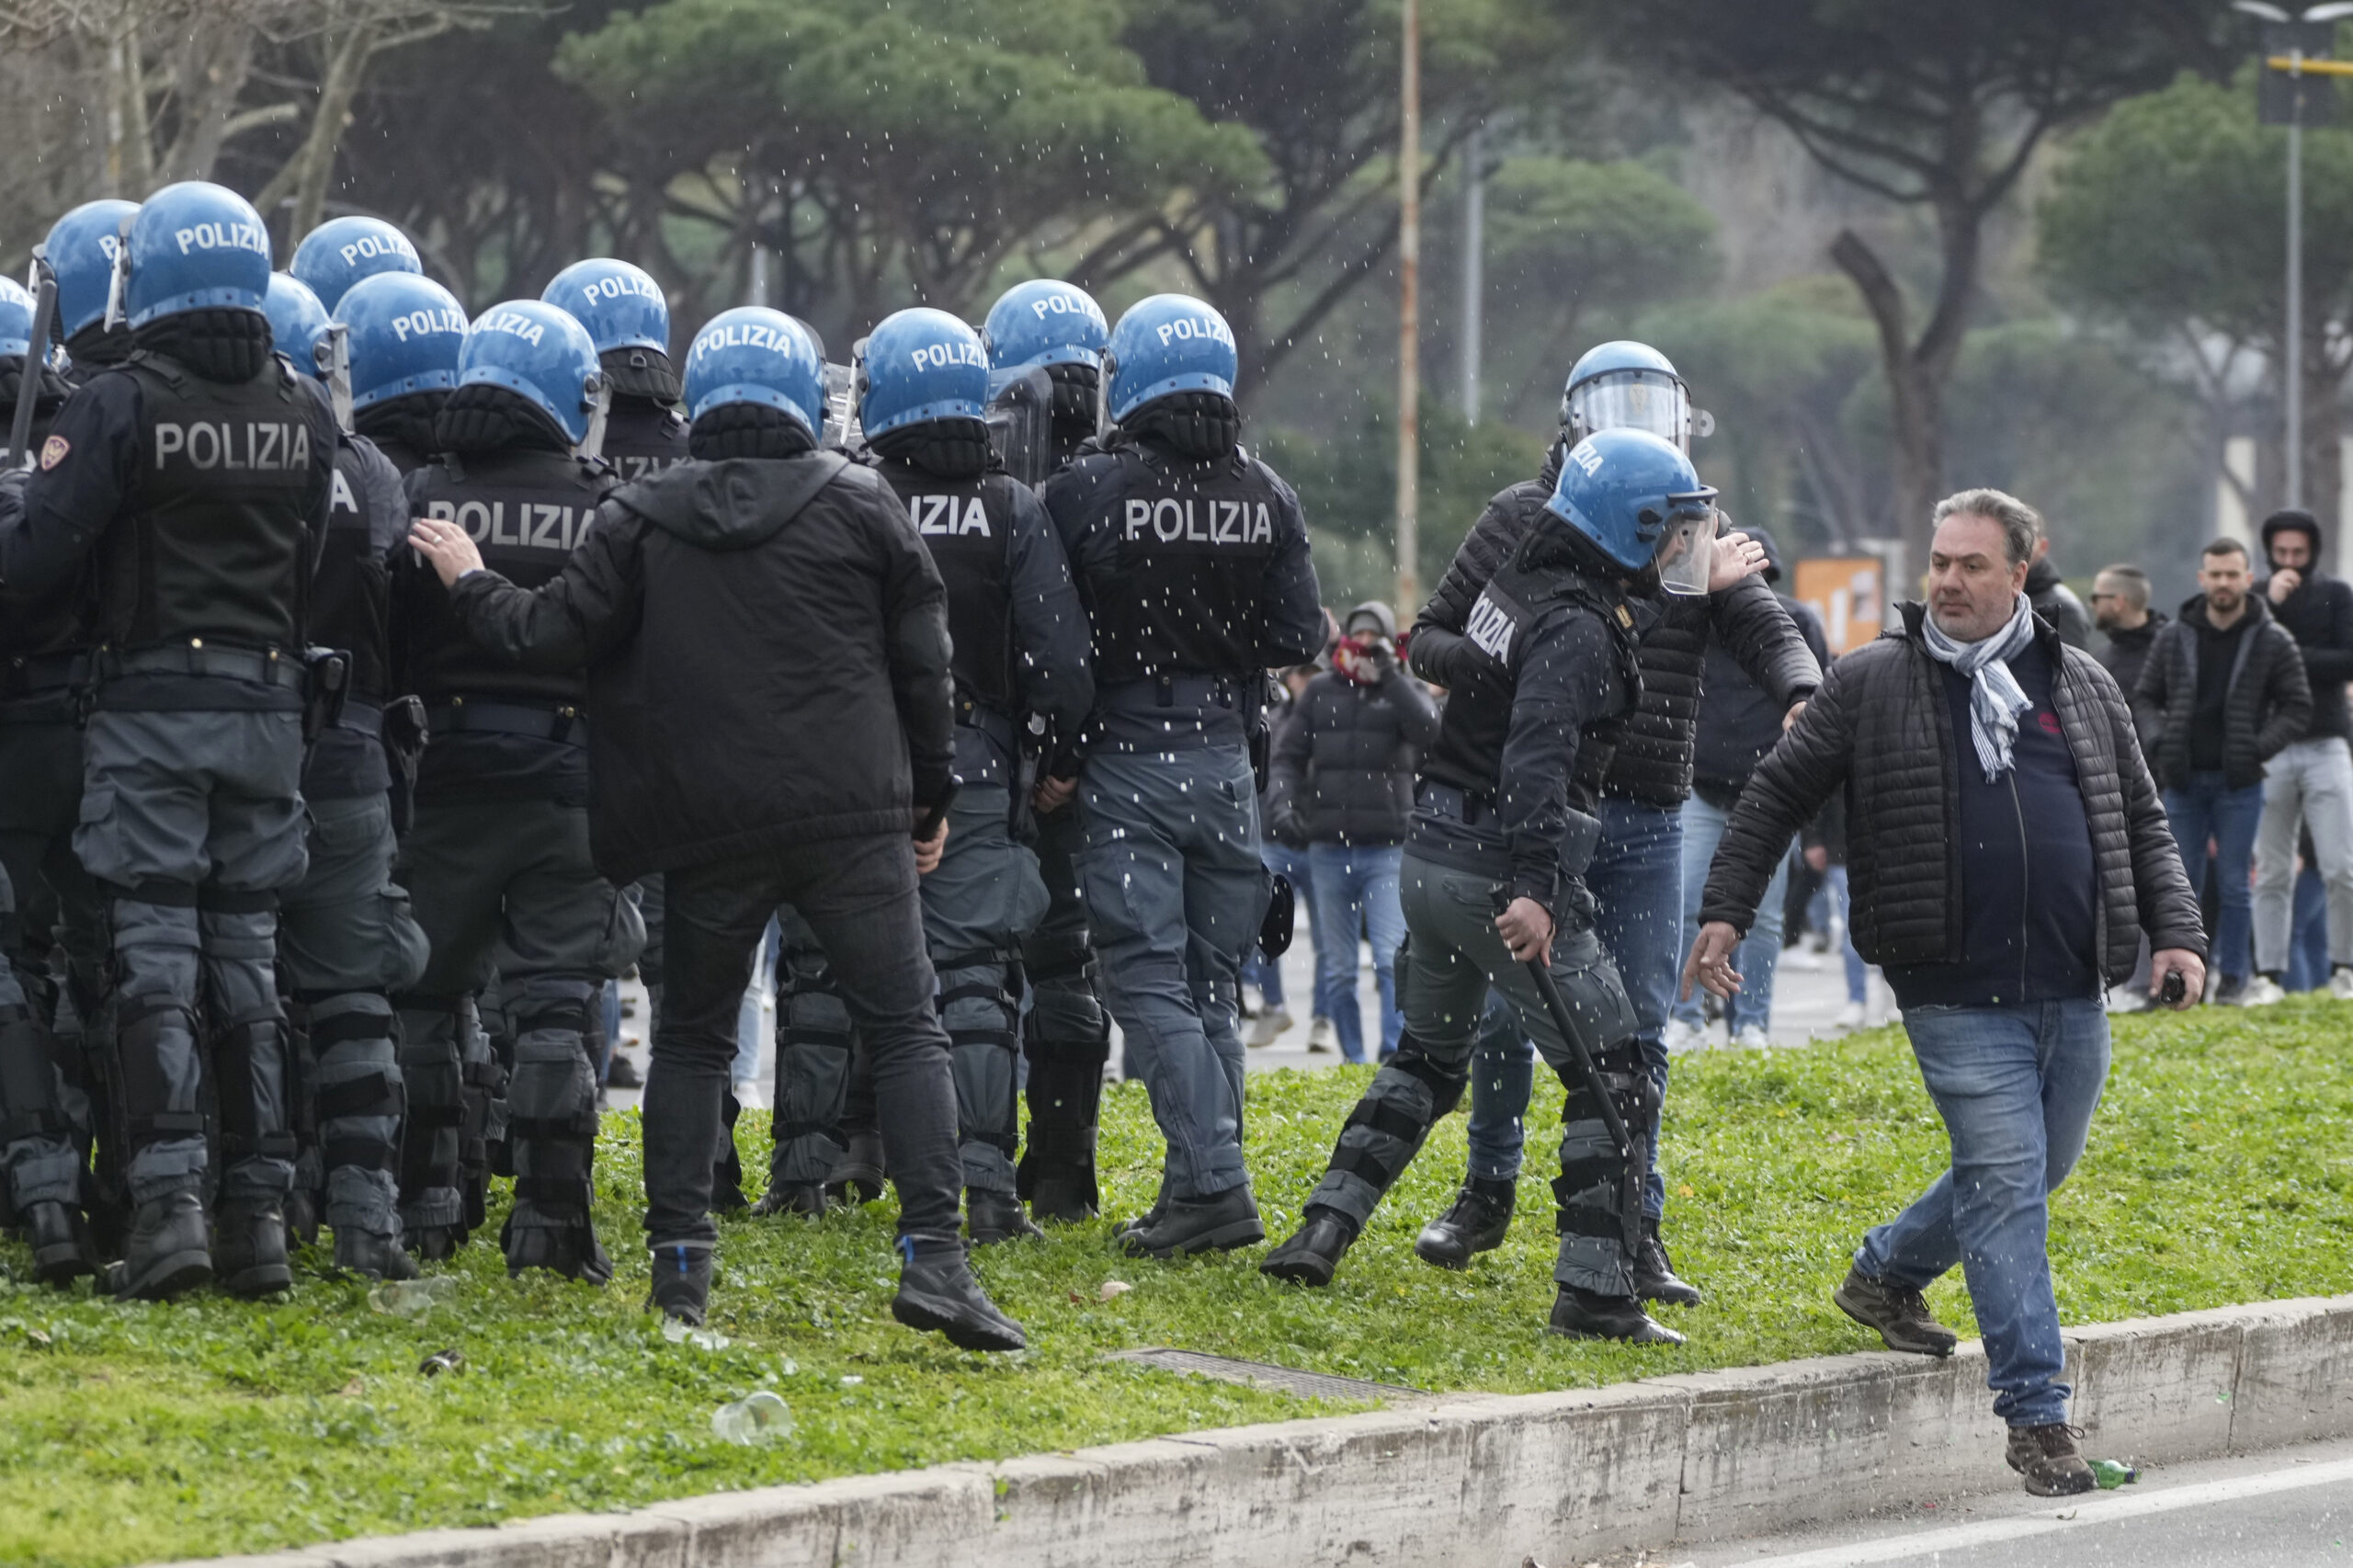 Ιταλία: Σύλληψη πέντε αστυνομικών για ξυλοδαρμό και βασανιστήρια σε βάρος πολιτών